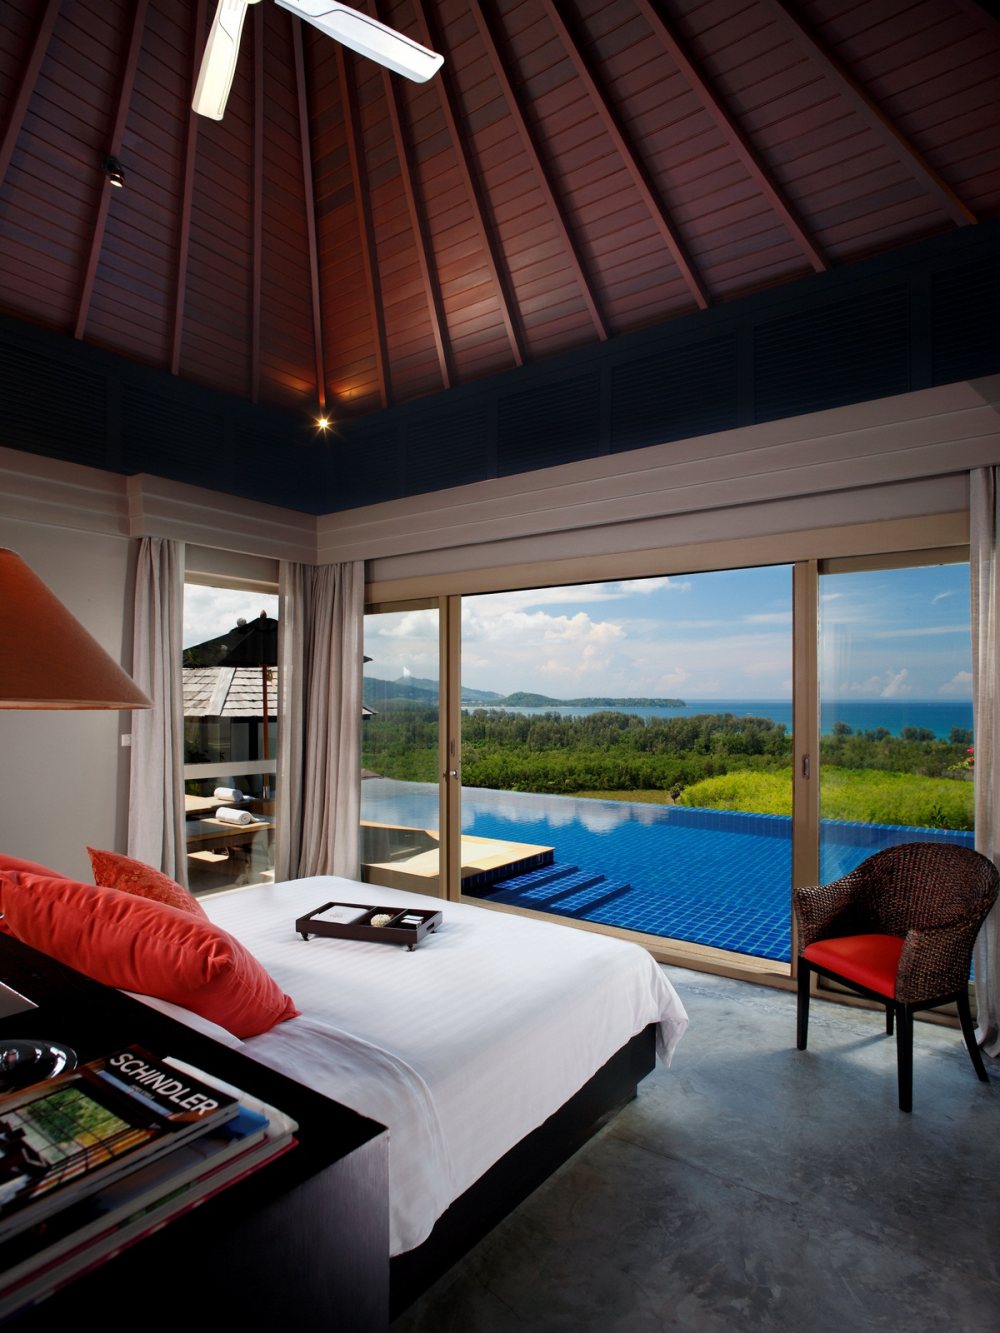 泰国普吉岛亭阁酒店 The Pavilions, Phuket_The-Pavilions-Phuket-Ocean-View-Pool-Villa-Bedroom.jpg